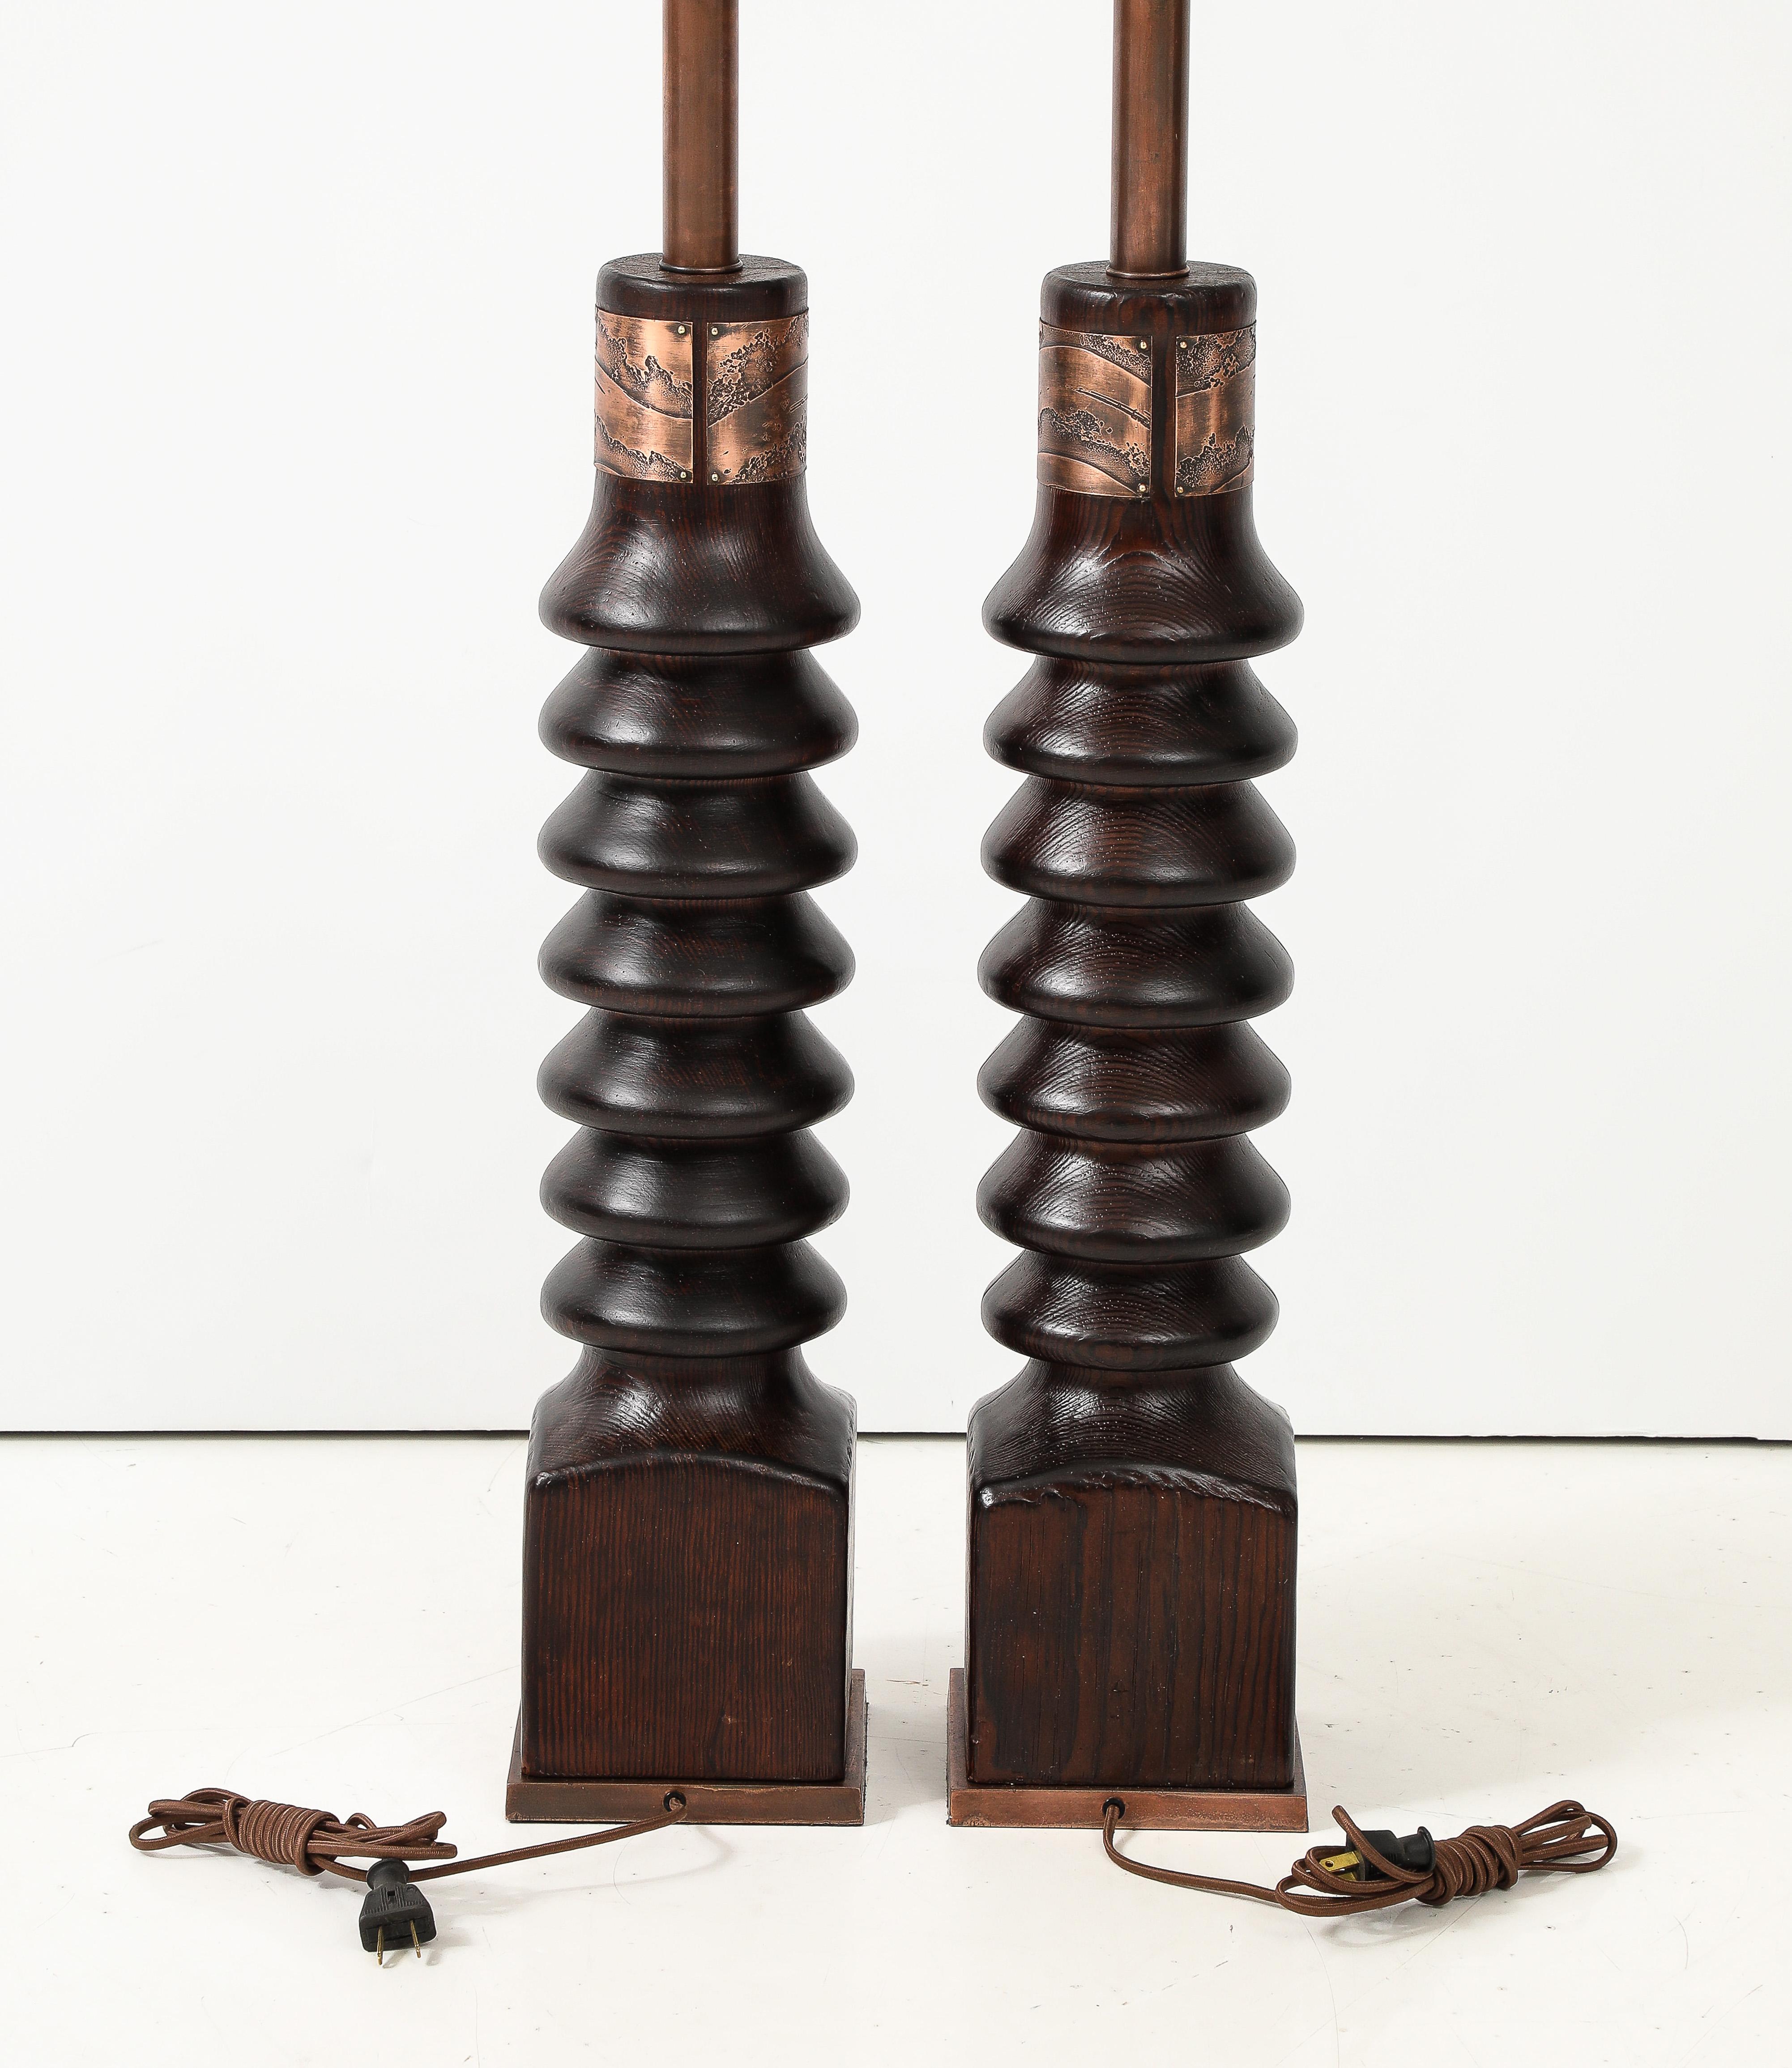 Superbe paire de lampes de table en chêne et cuivre de Laurel, datant du milieu du siècle dernier, entièrement restaurée et recâblée avec du fil de soie, avec une usure et une patine mineures dues à l'âge et à l'utilisation. 